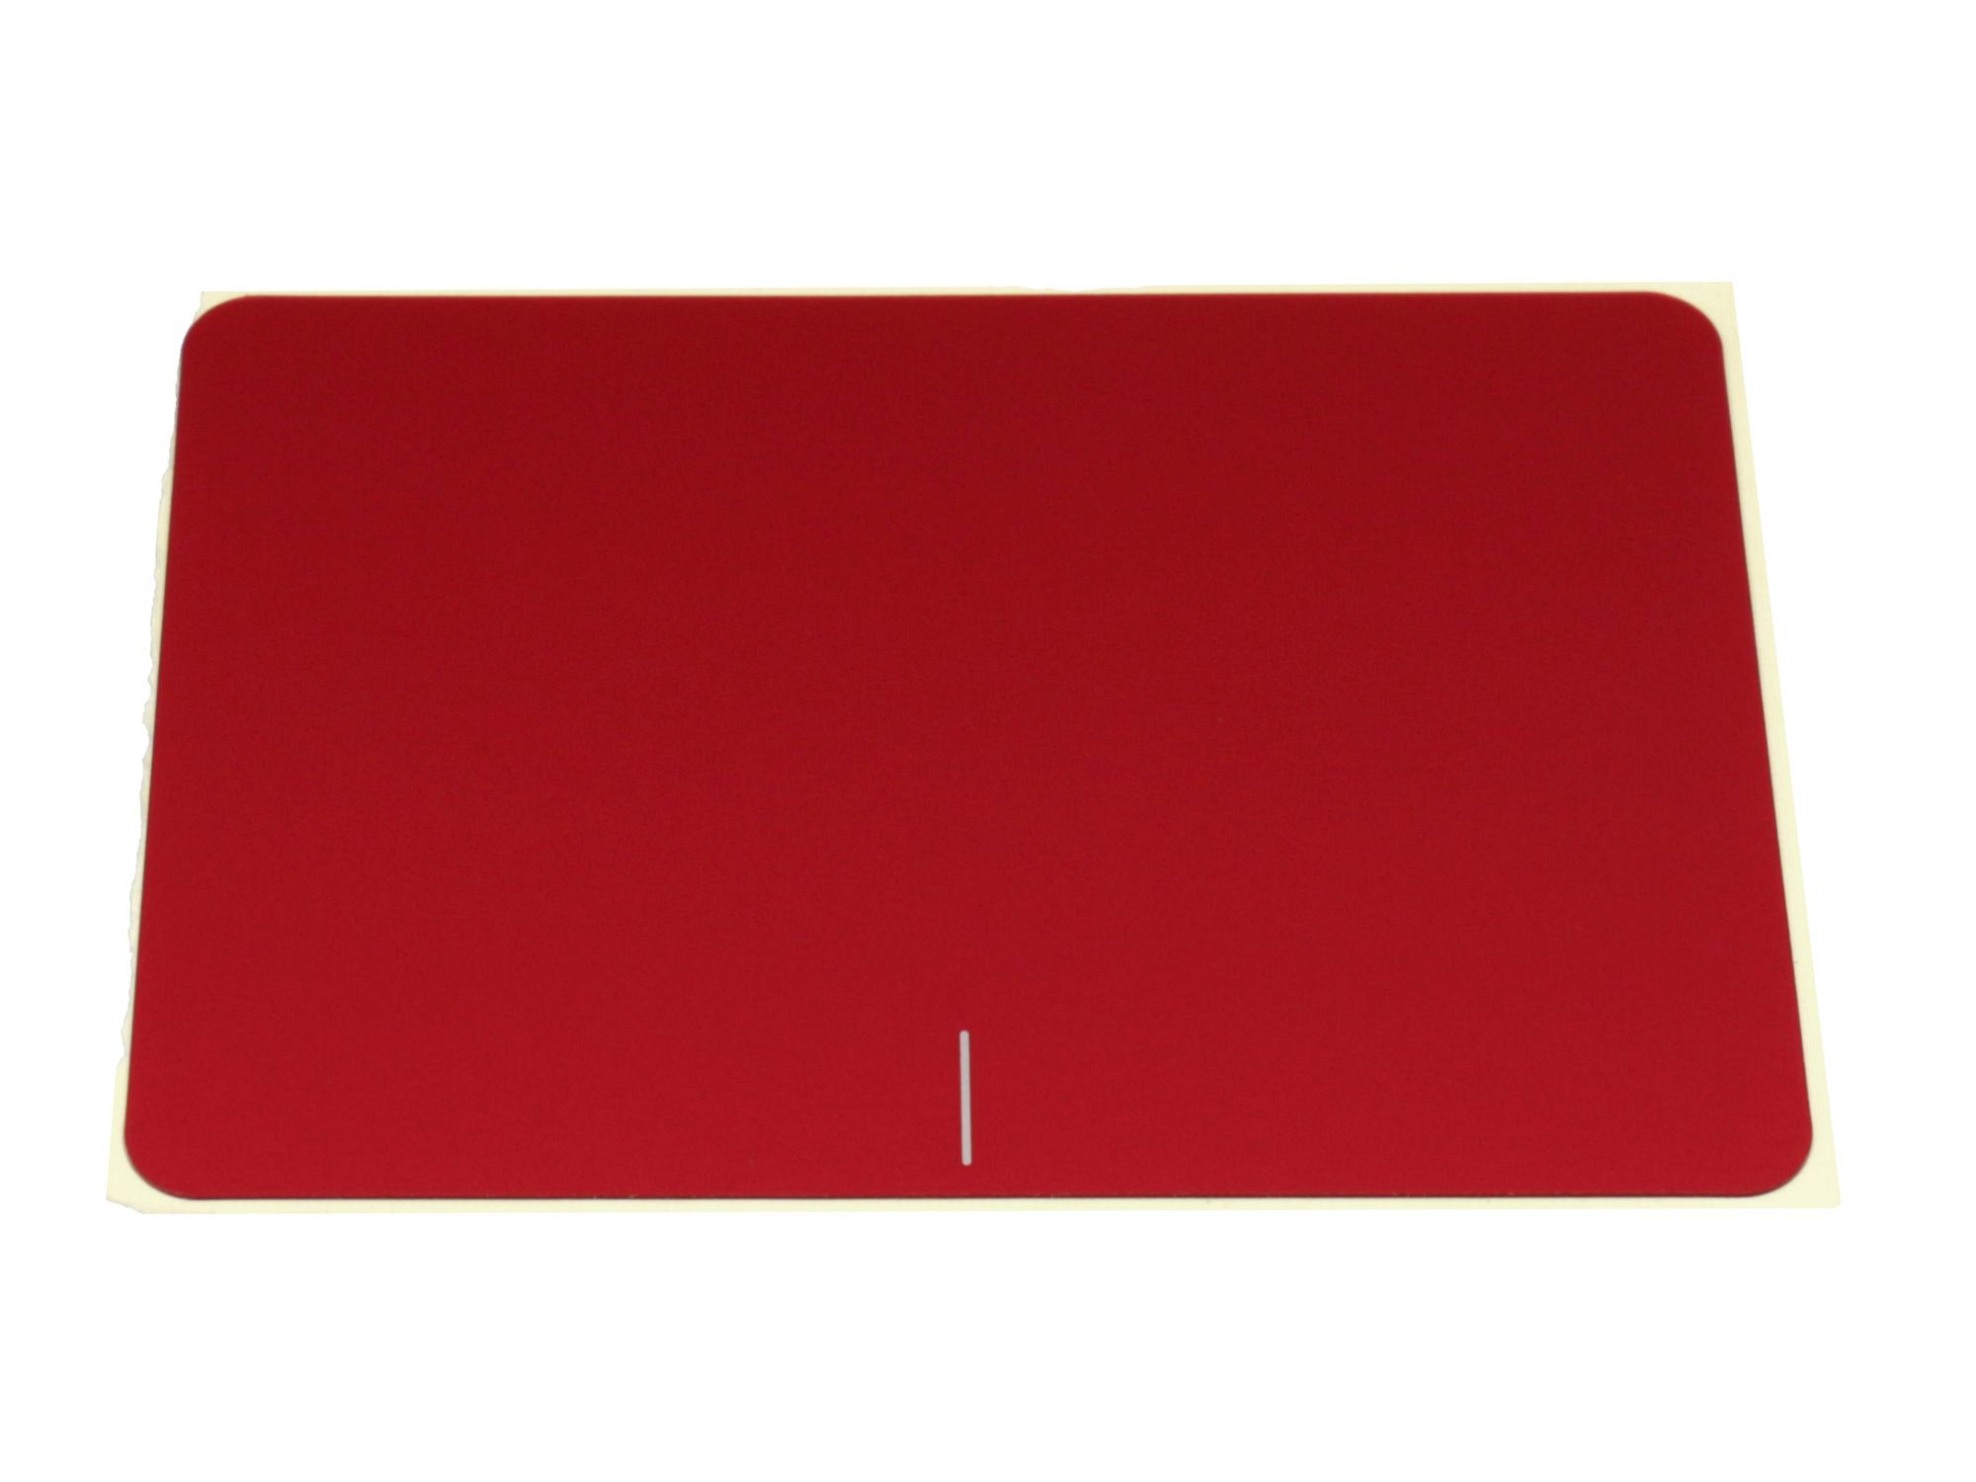 Touchpad Abdeckung rot für Asus F556UA